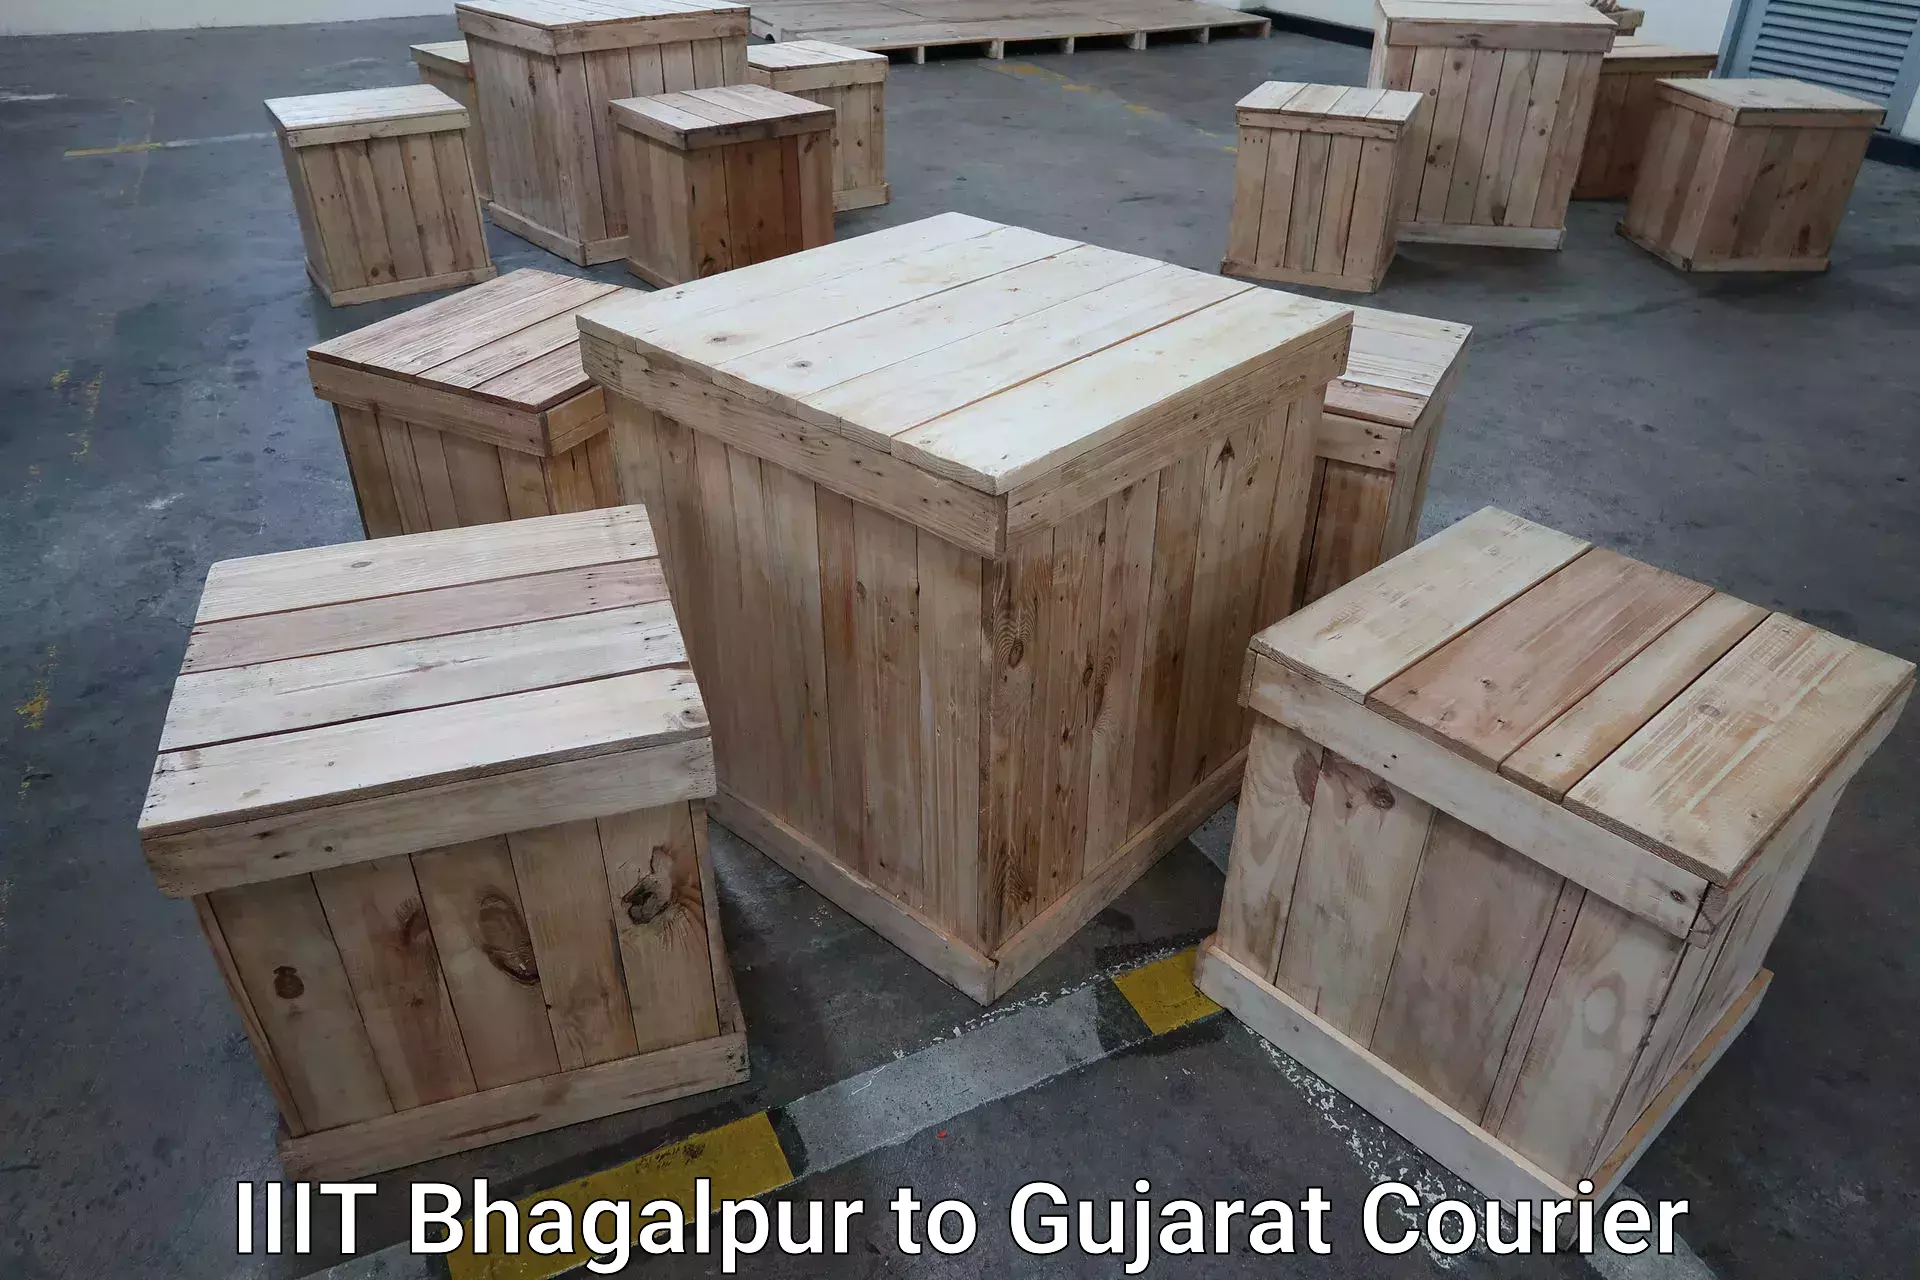 Luggage forwarding service IIIT Bhagalpur to Becharaji